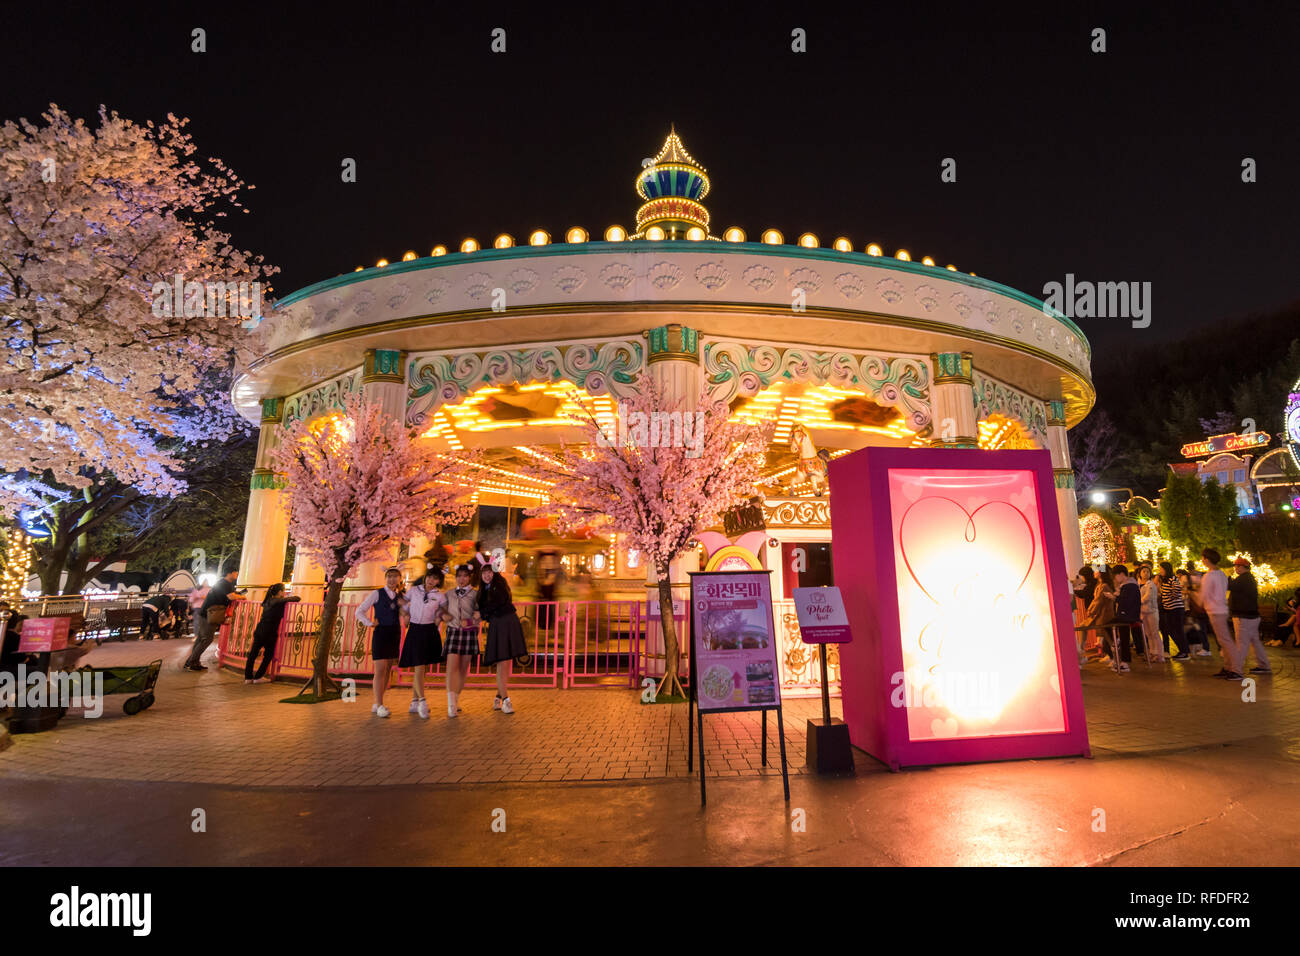 Vue de nuit E-World theme park et 83 dans la tour de Seoul. Banque D'Images